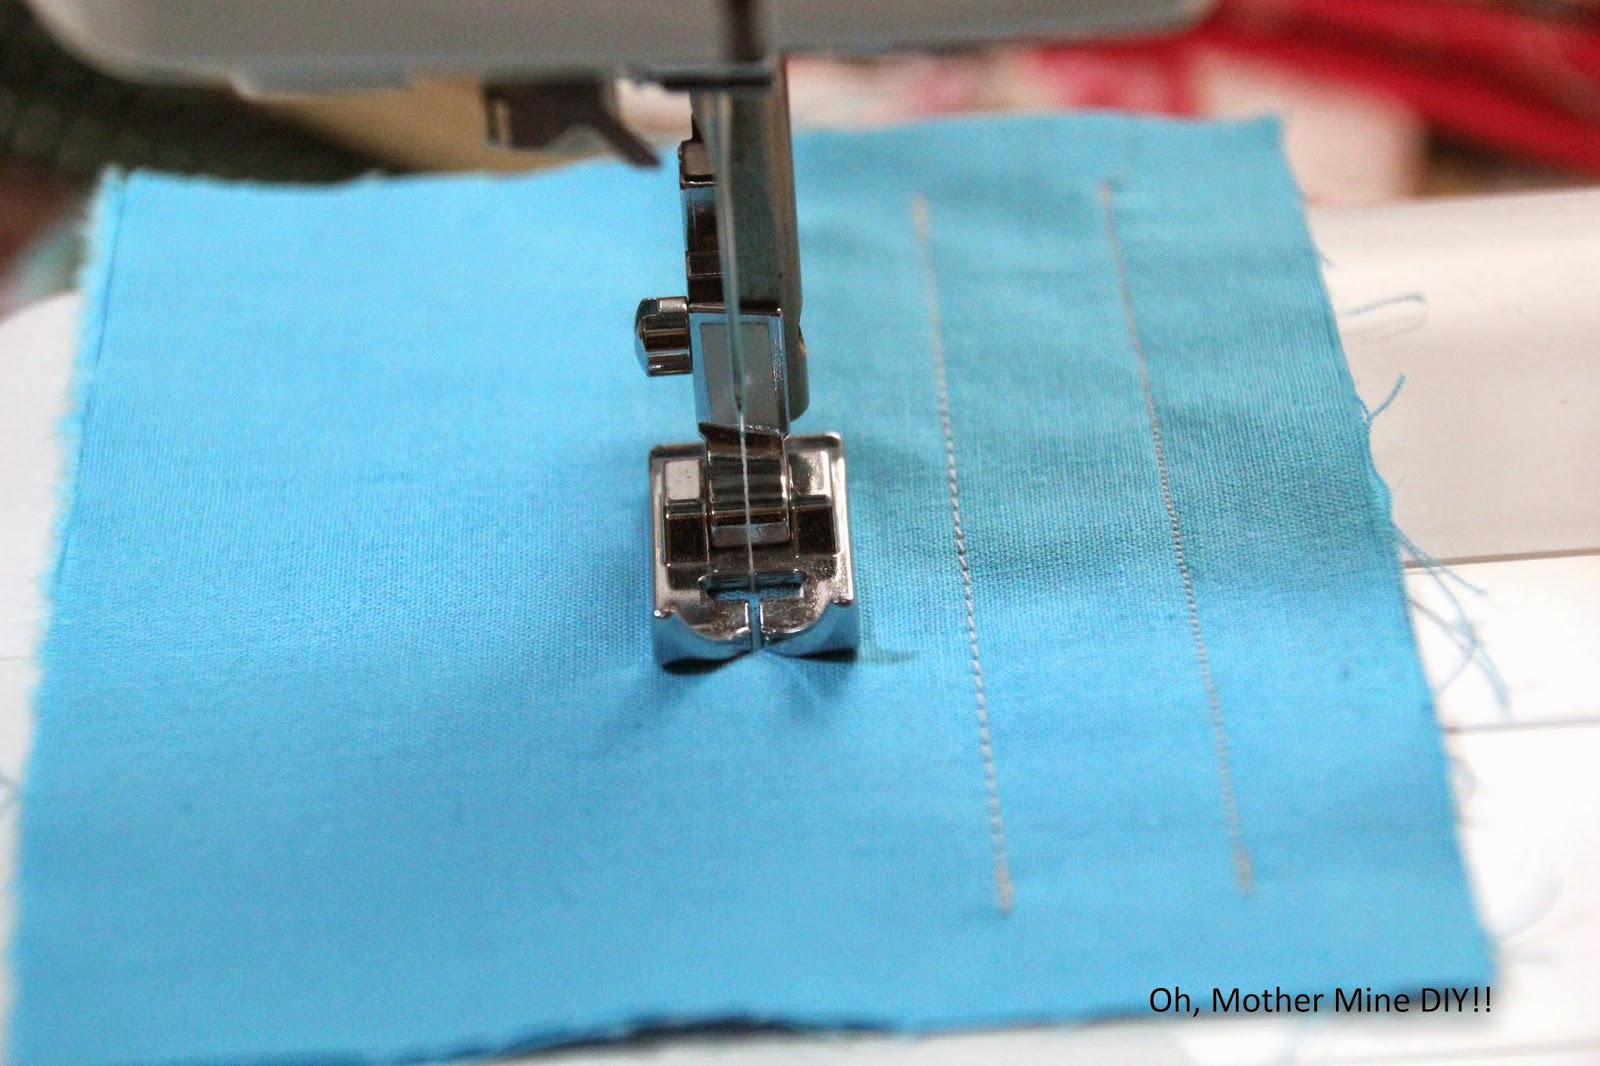 clases de costura gratis online aprender a coser. Blog de costura y diy